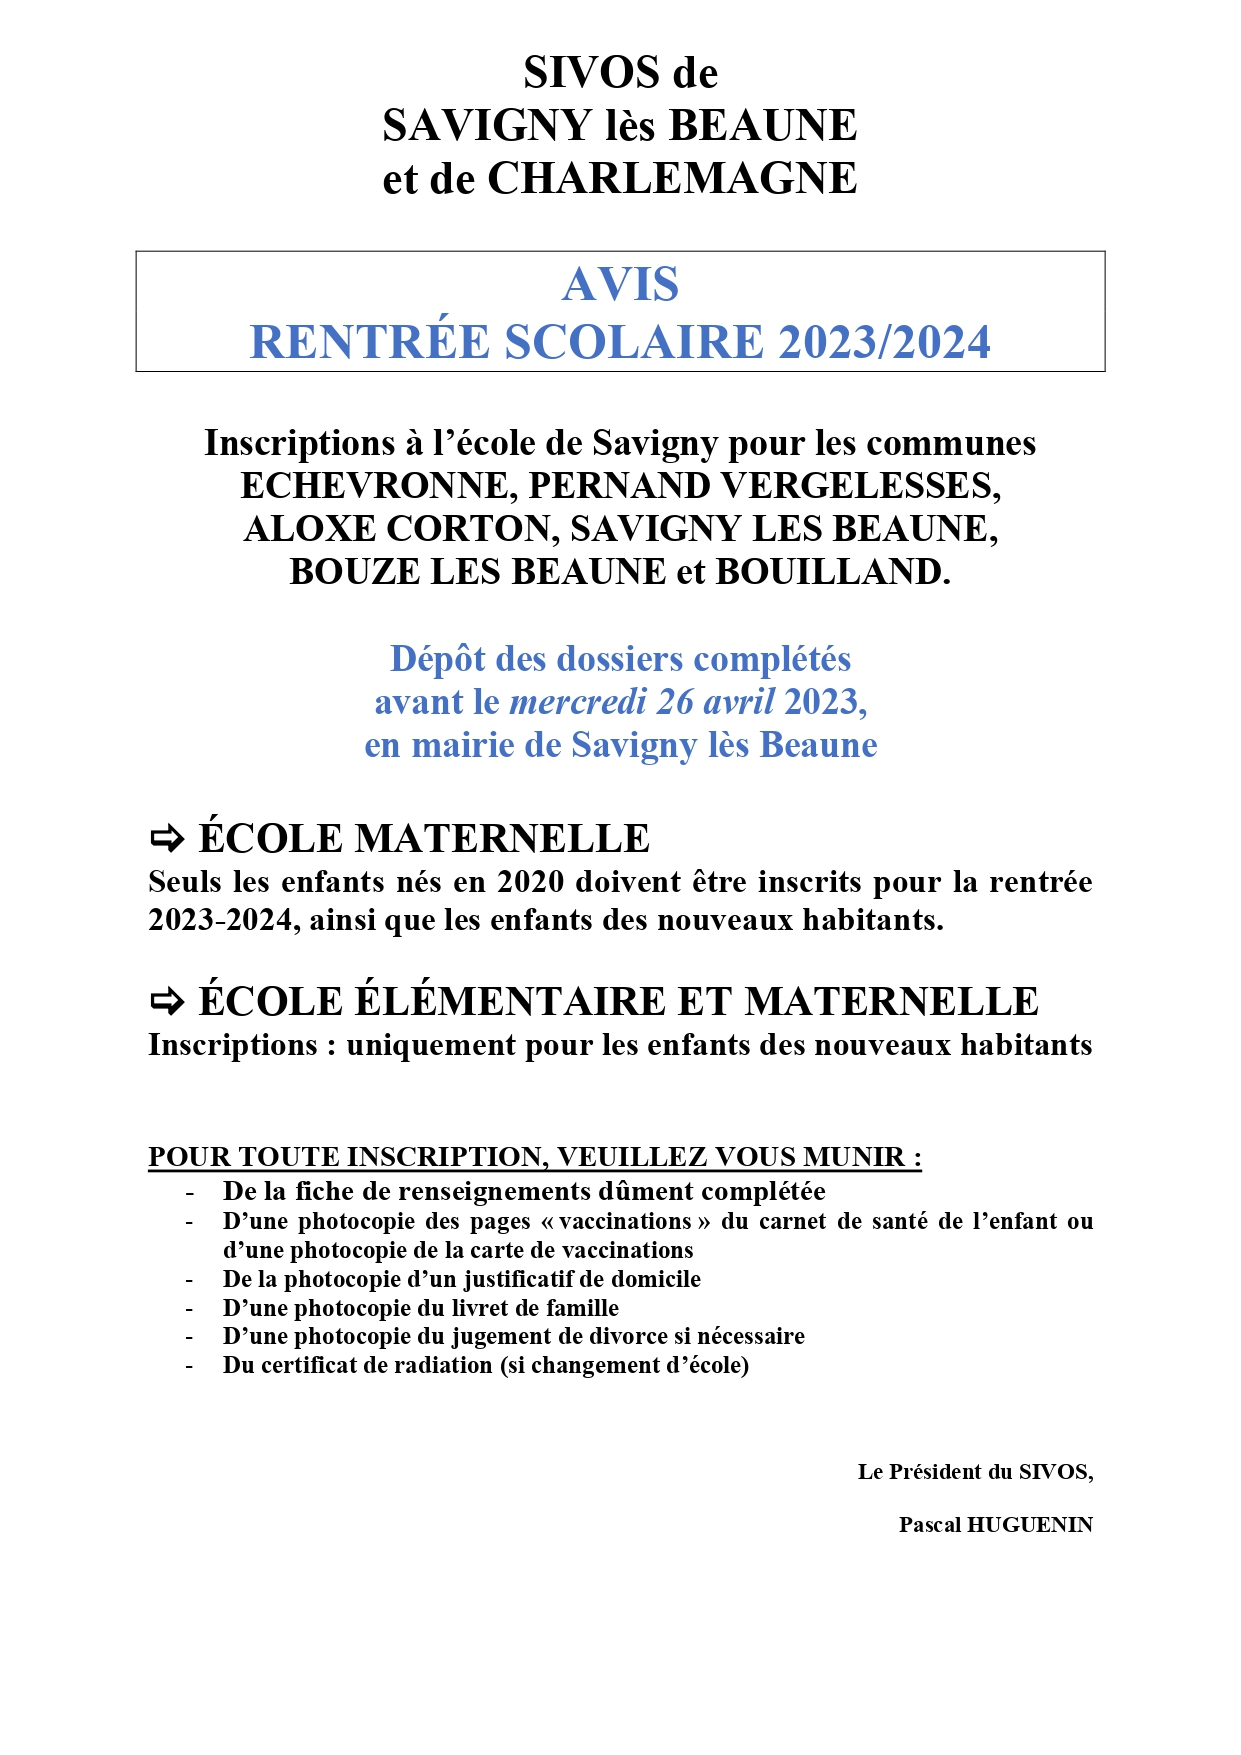 Inscriptions scolaires 2023-2024 école de Savigny les Beaune